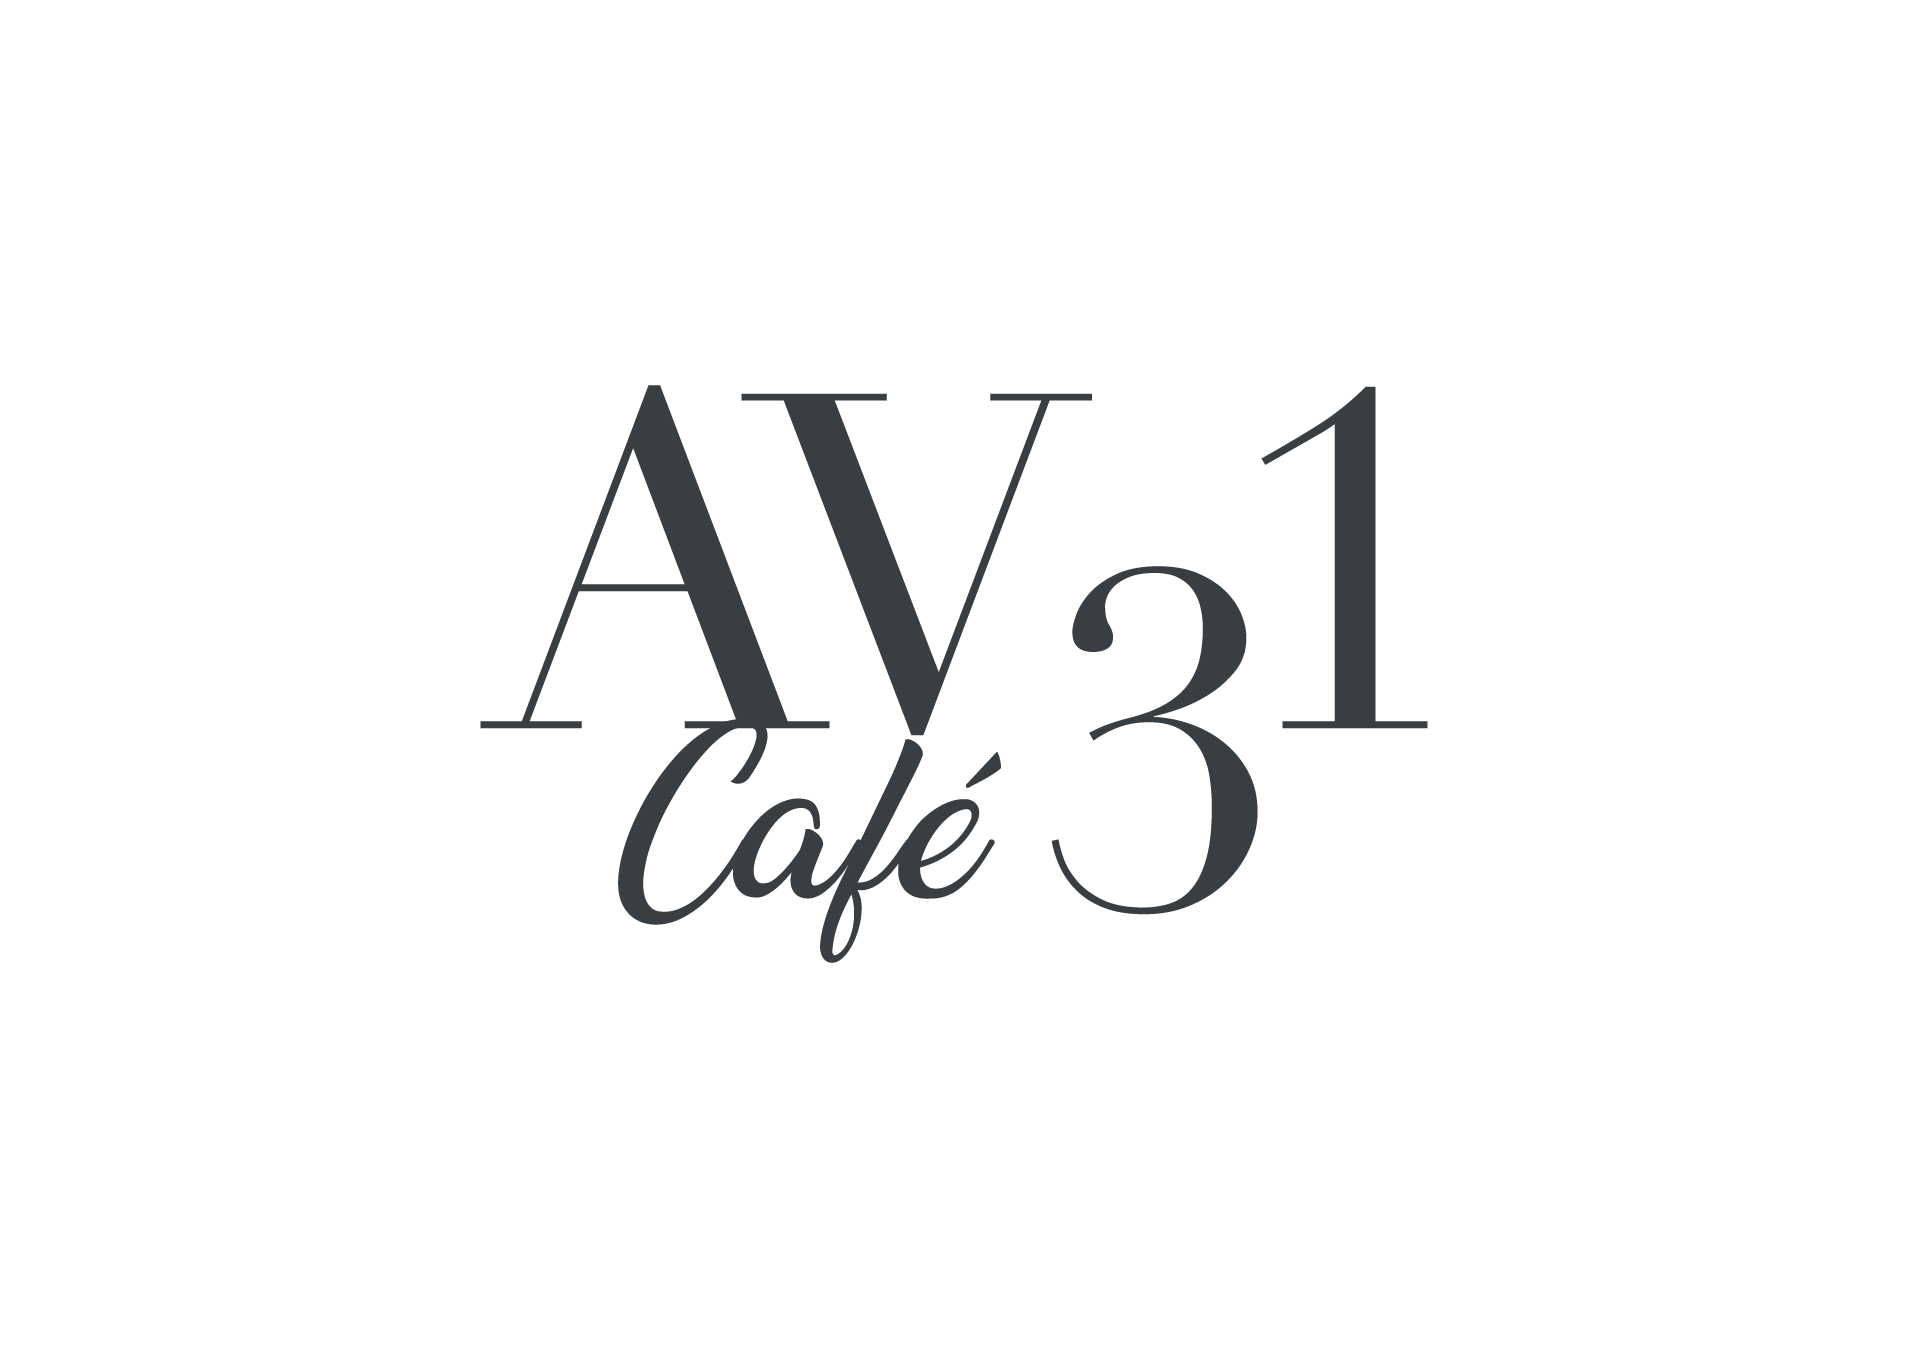 Avenue 31 Café Miami